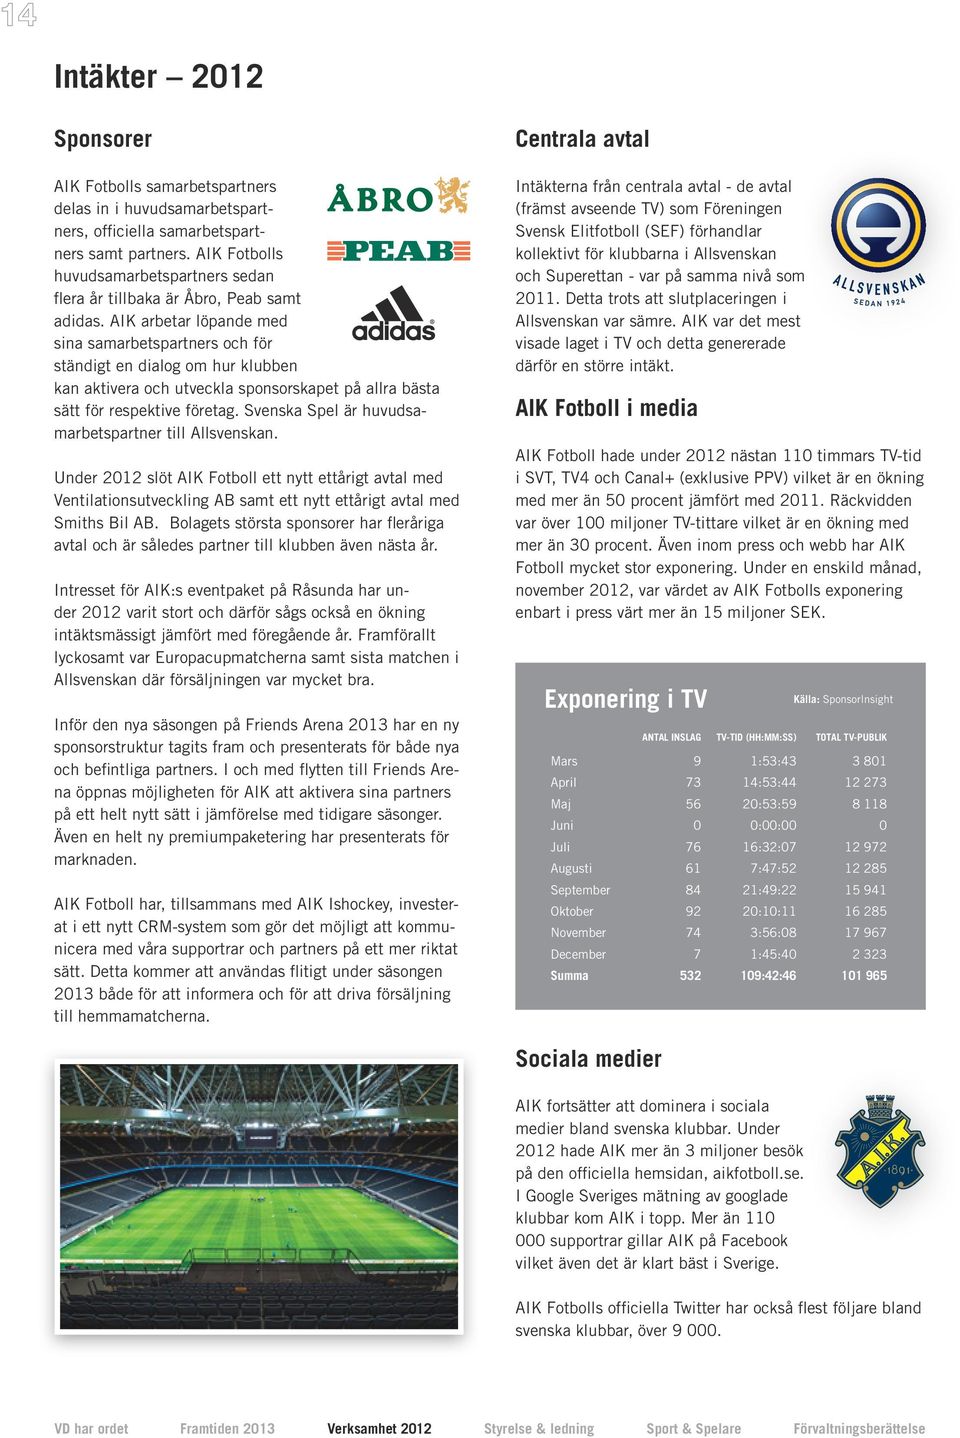 AIK arbetar löpande med sina samar betspartners och för ständigt en dialog om hur klubben kan aktivera och utveckla sponsorskapet på allra bästa sätt för respektive företag.